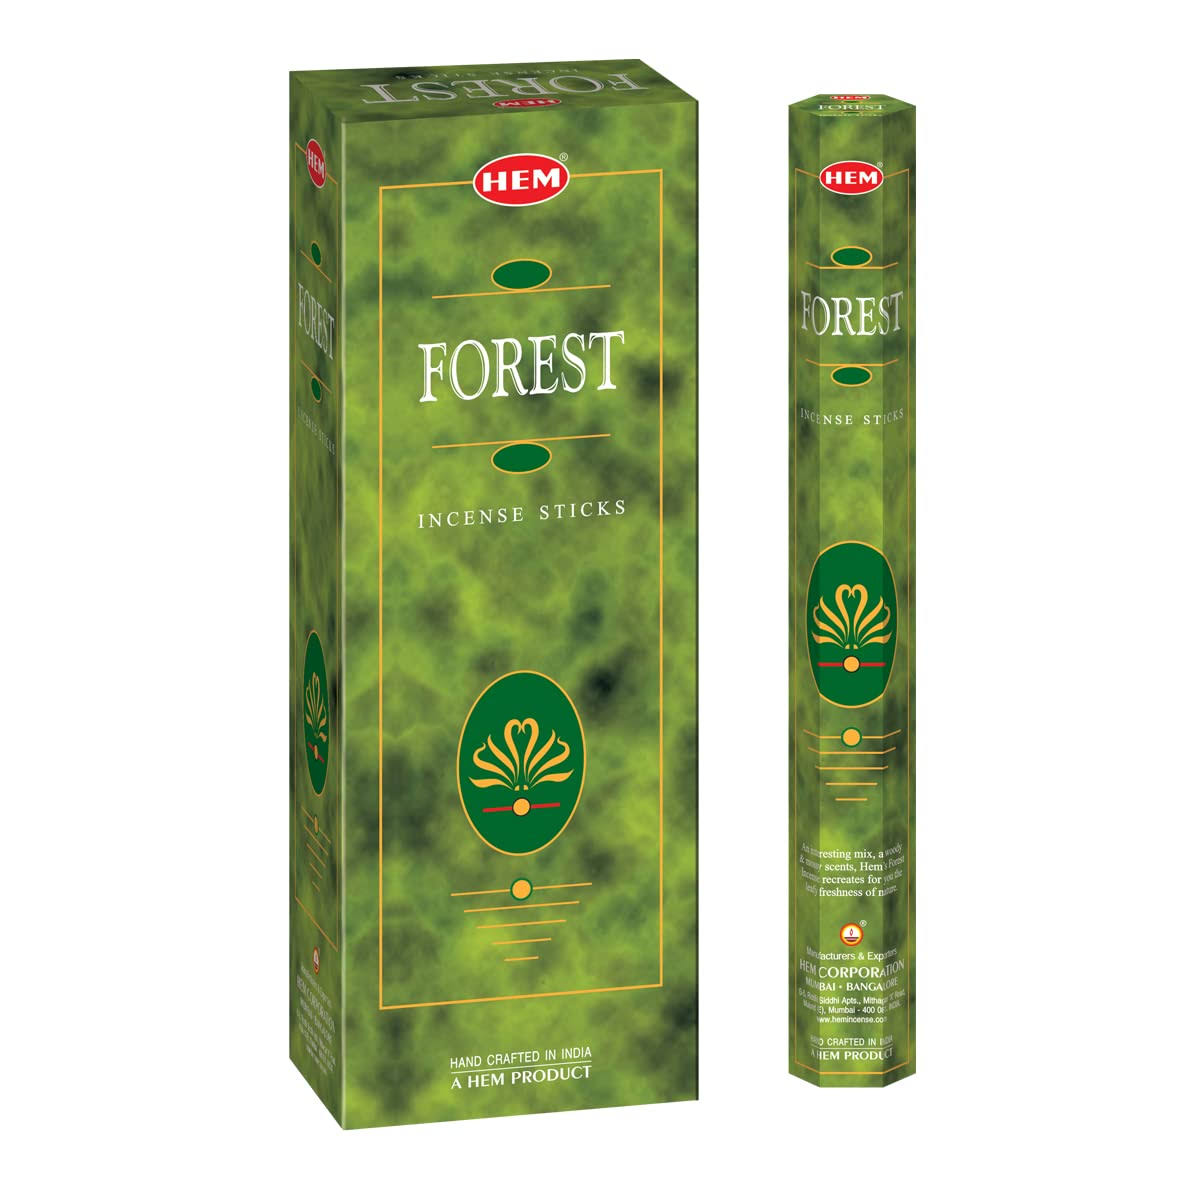 Hem Forest Incense Sticks - 360 Sticks, 3 Boxes